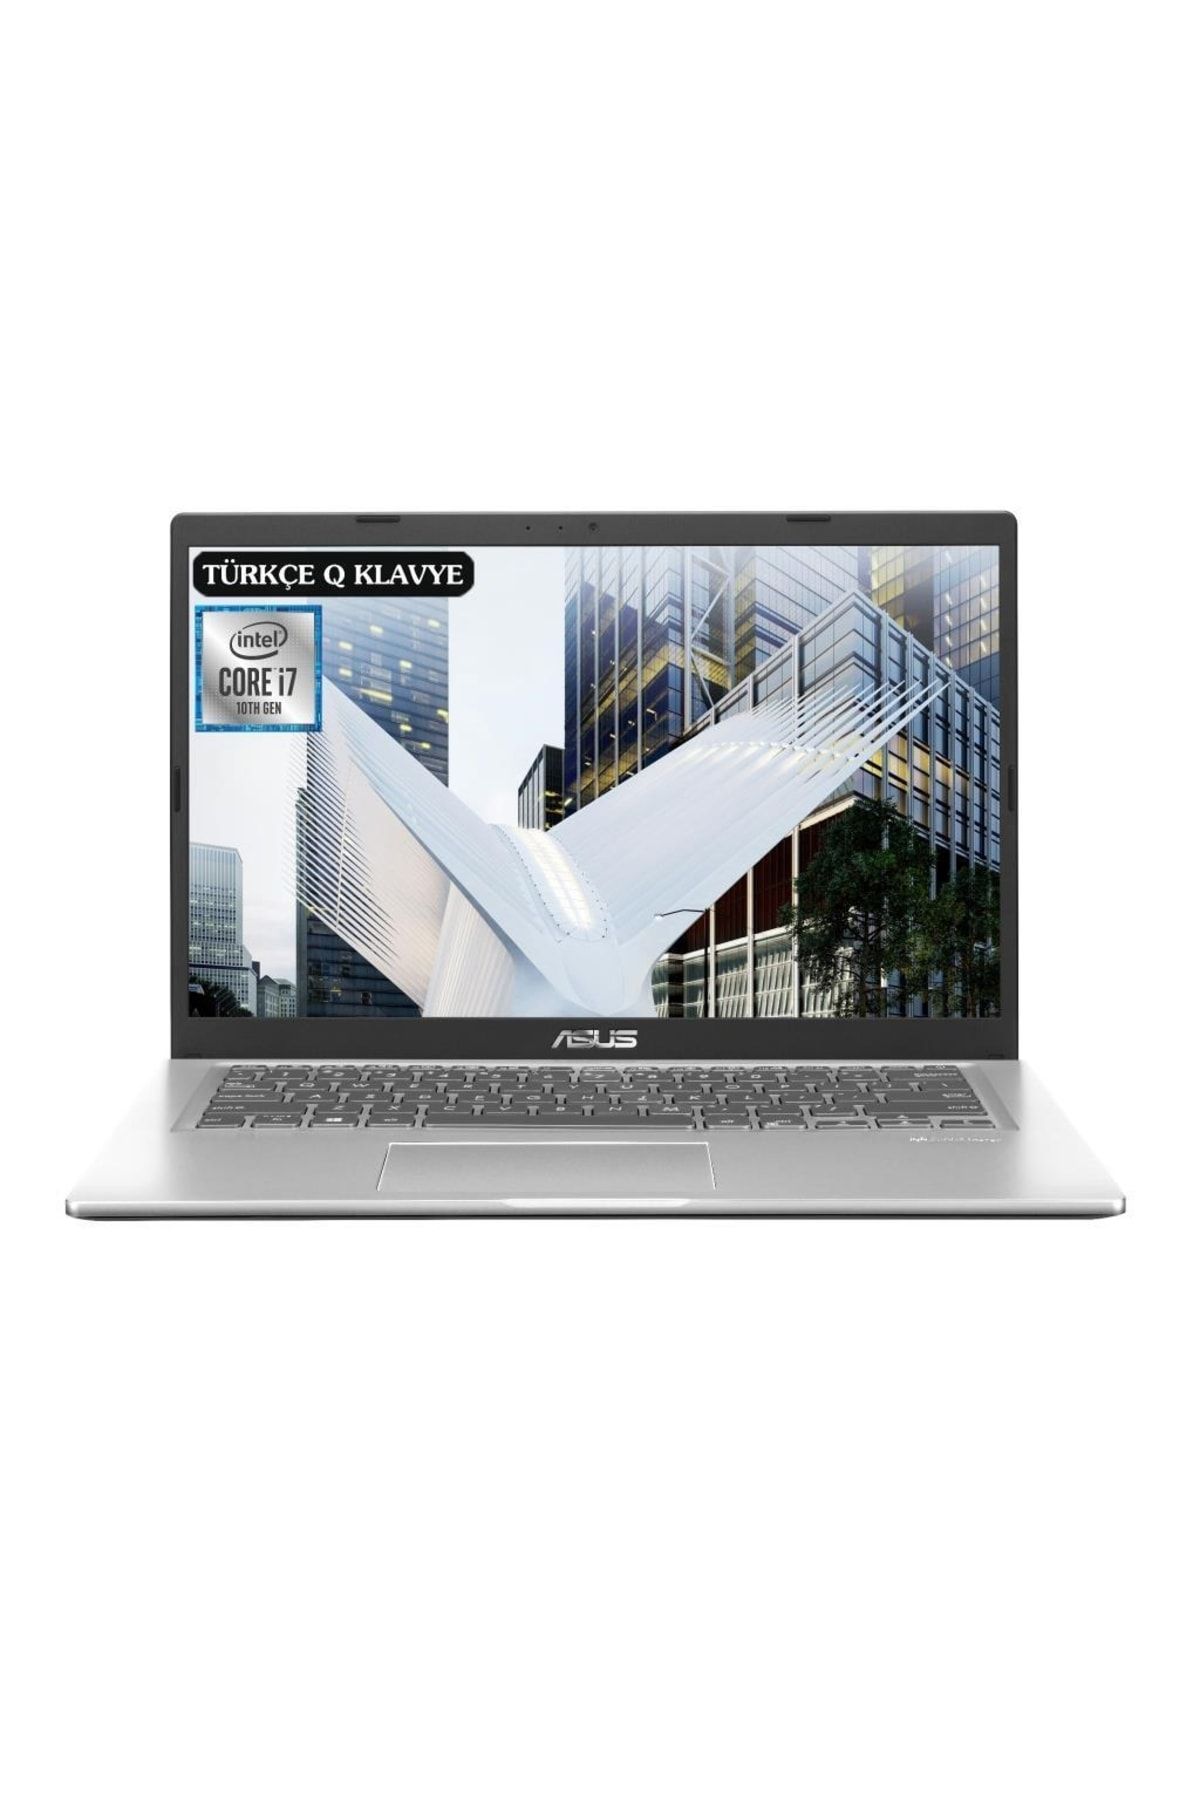 ASUS Vivobook X415ja-ek1654a4 I7-1065g7 16gb 1tbssd 14" Fullhd Freedos Taşınabilir Bilgisayar